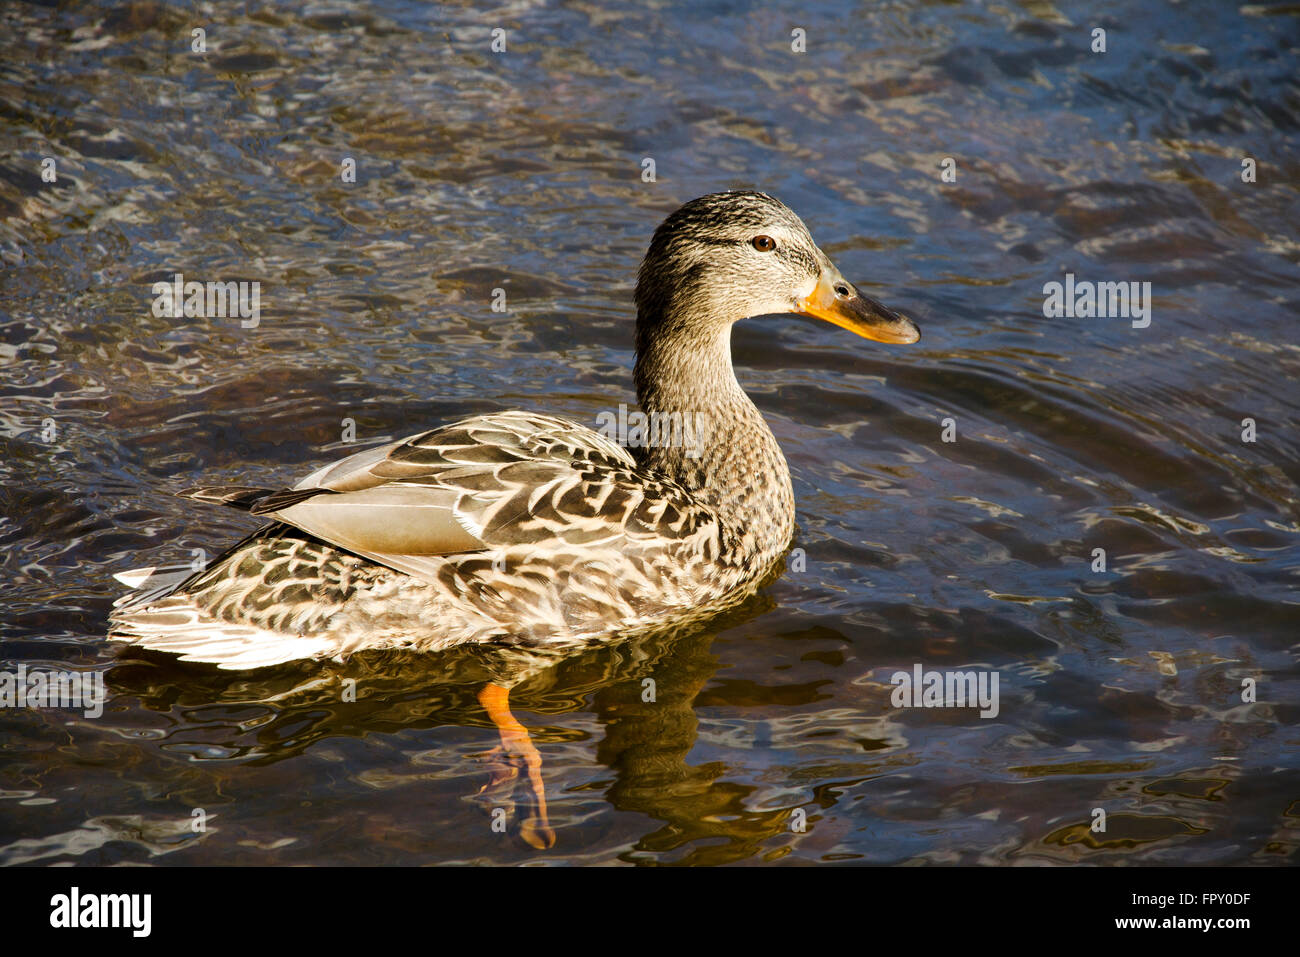 Mallard duck nuotare in acqua Foto Stock